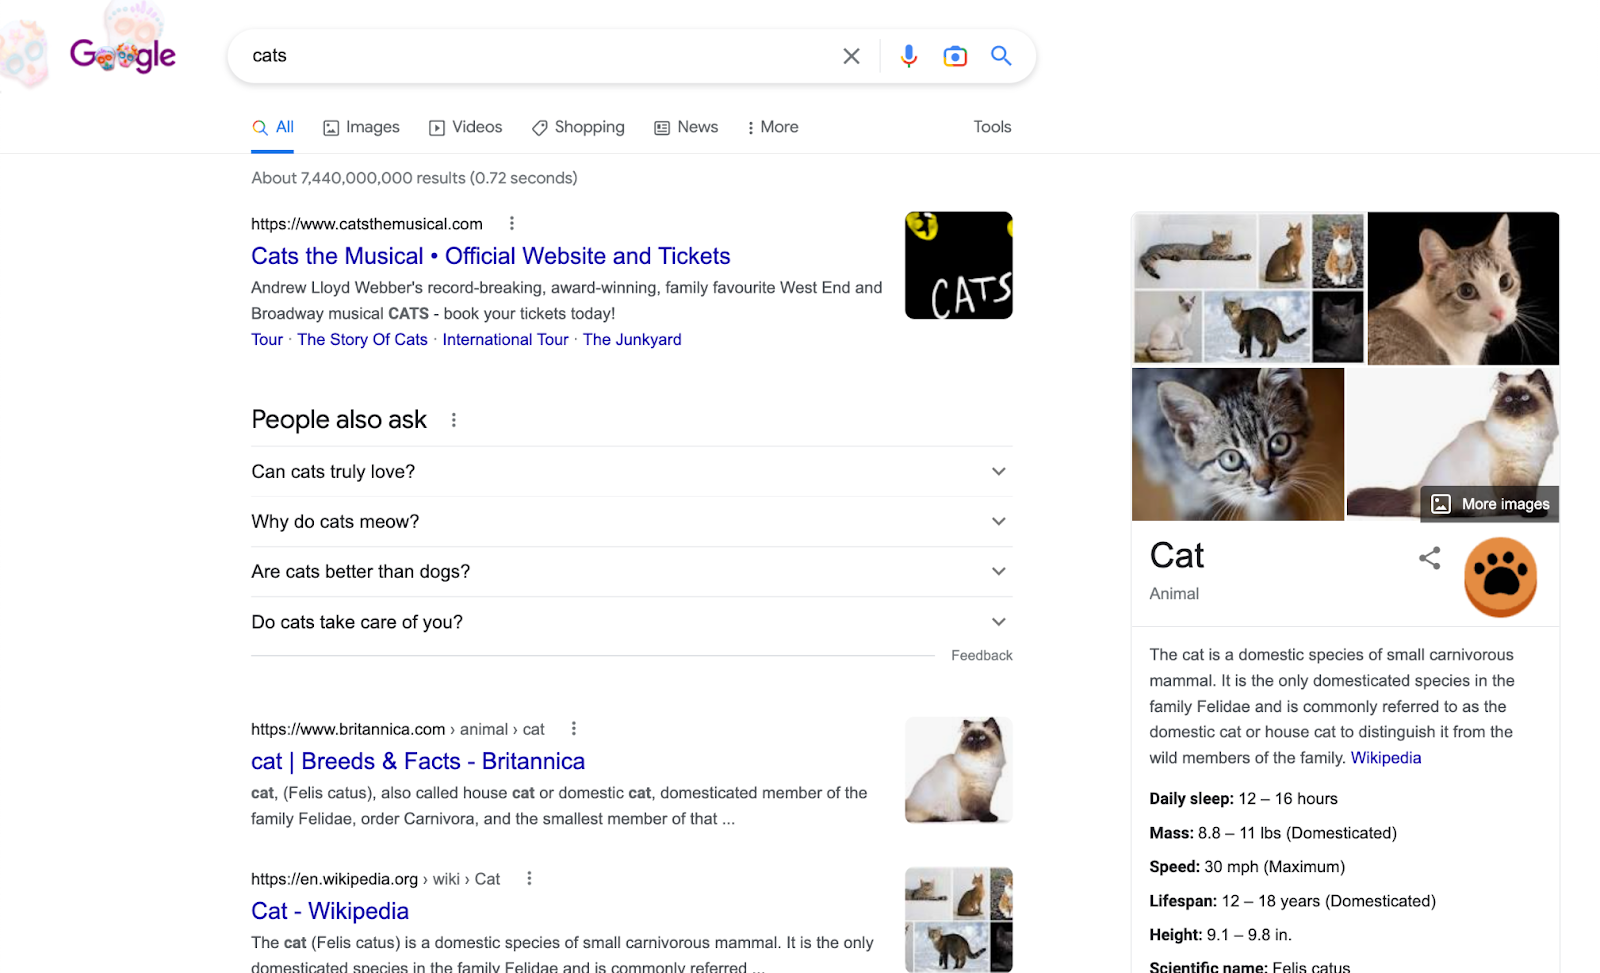 Скриншот для поискового запроса «кошки» в Google. Он демонстрирует функции SERP, такие как панель знаний, раздел «люди также спрашивают» и пакет изображений.